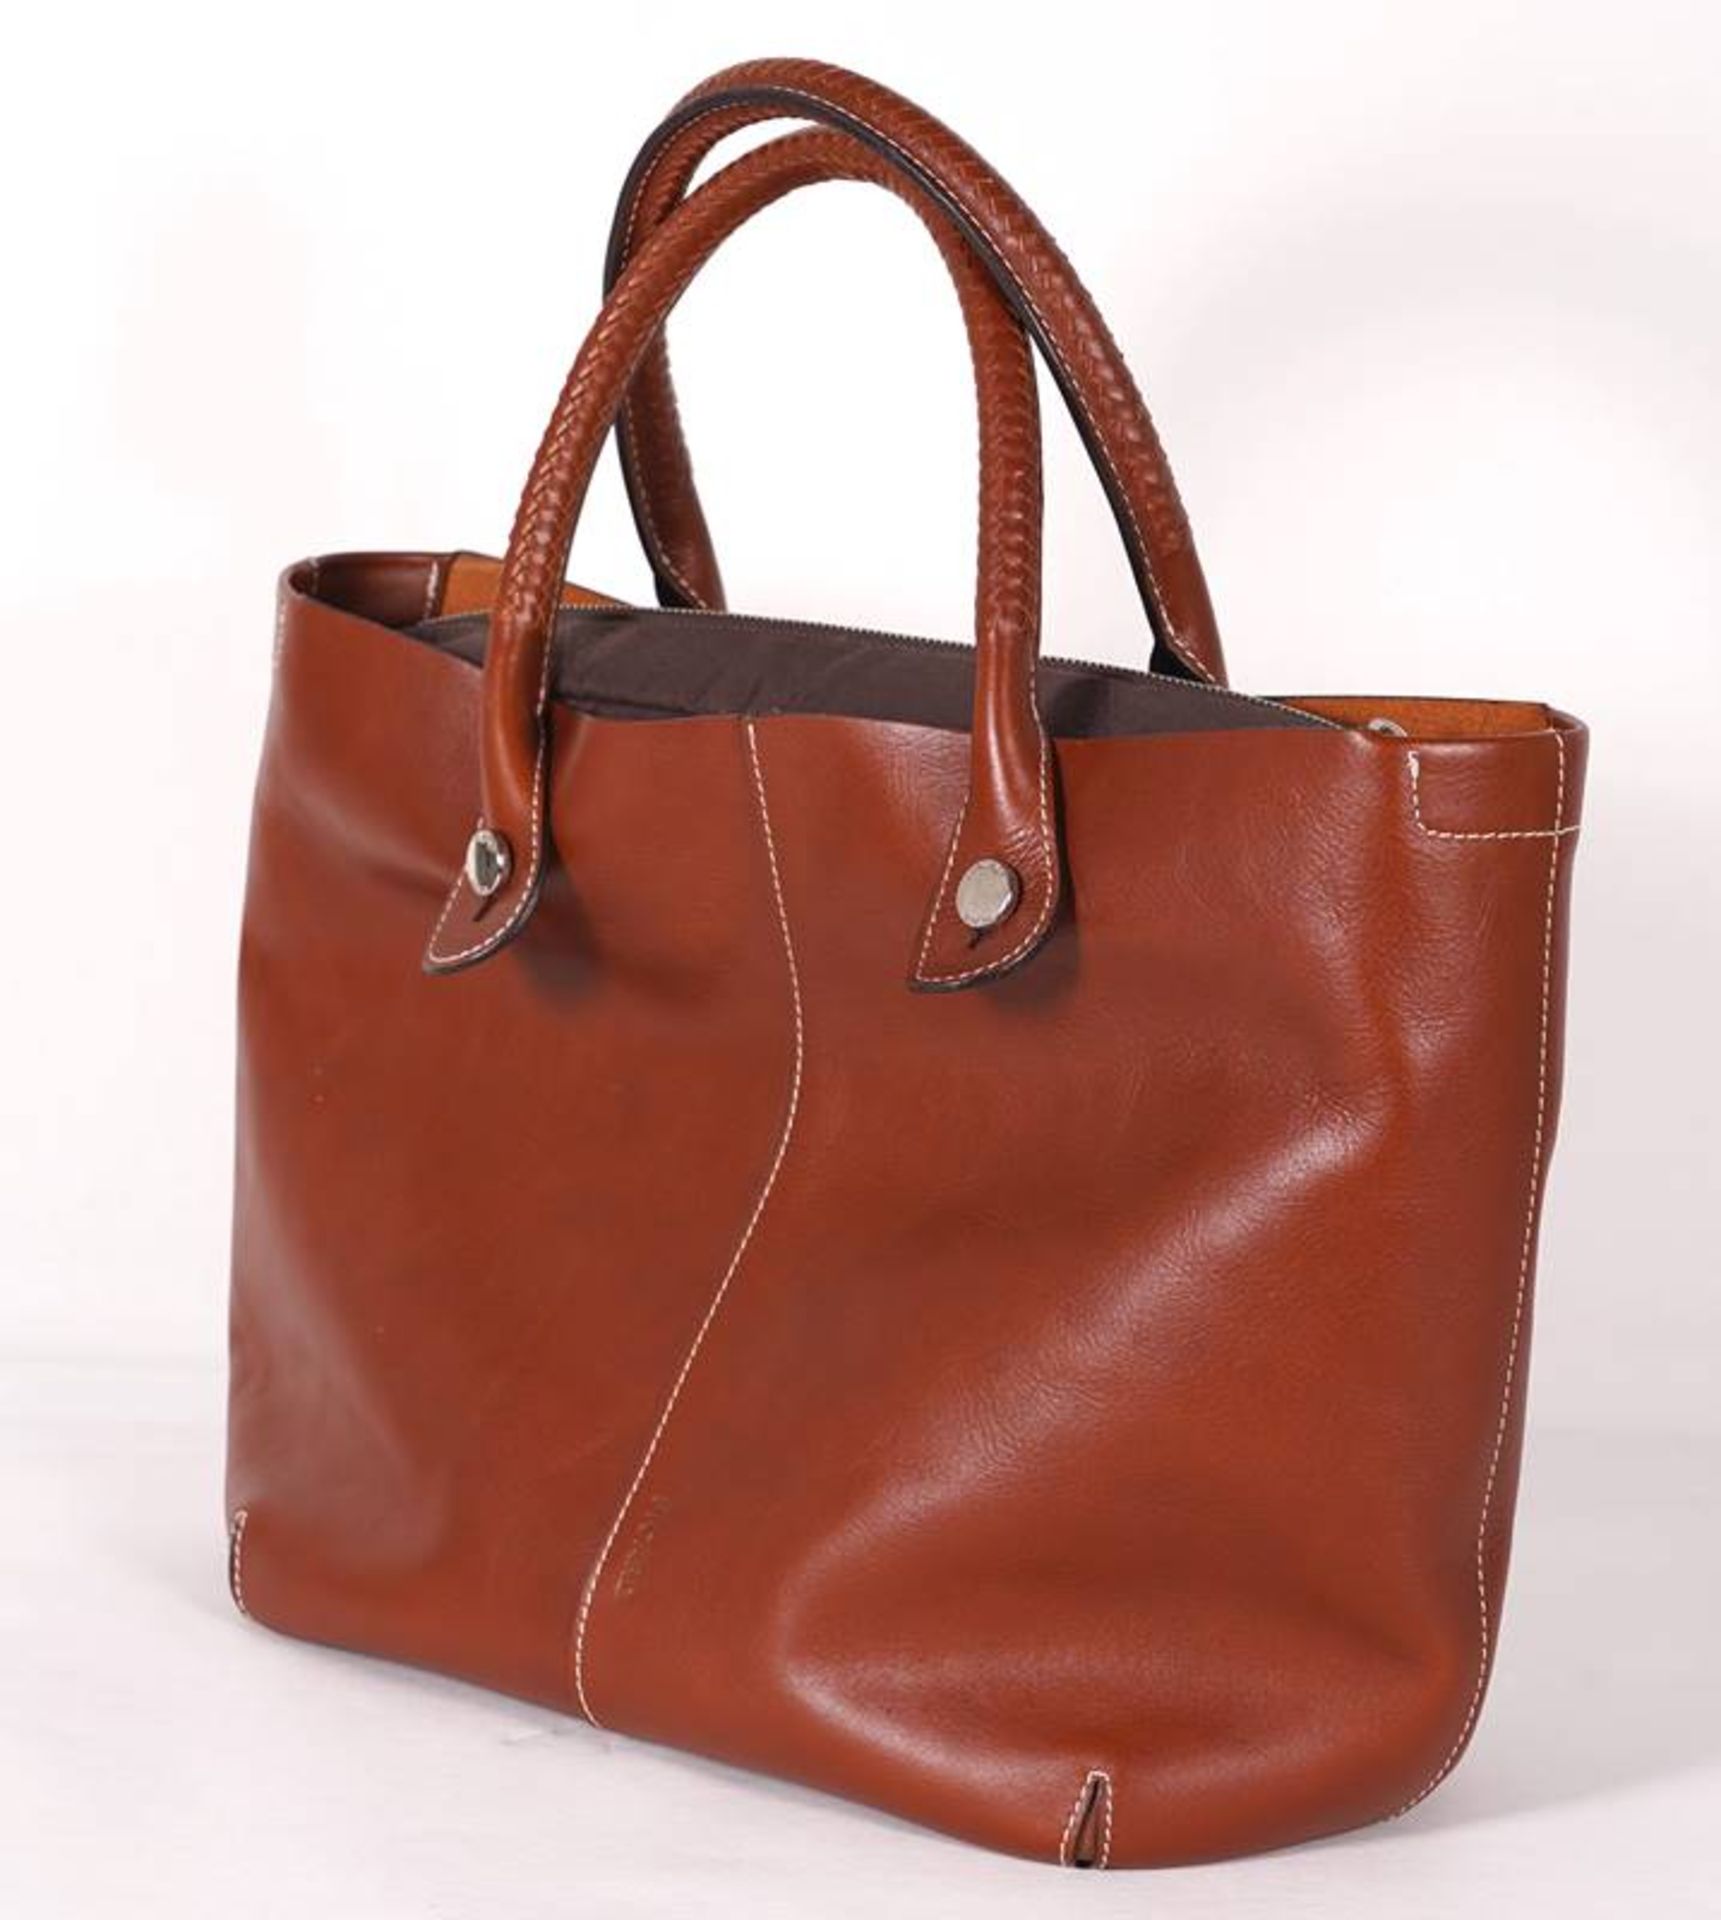 Picard Handbag - Image 2 of 8